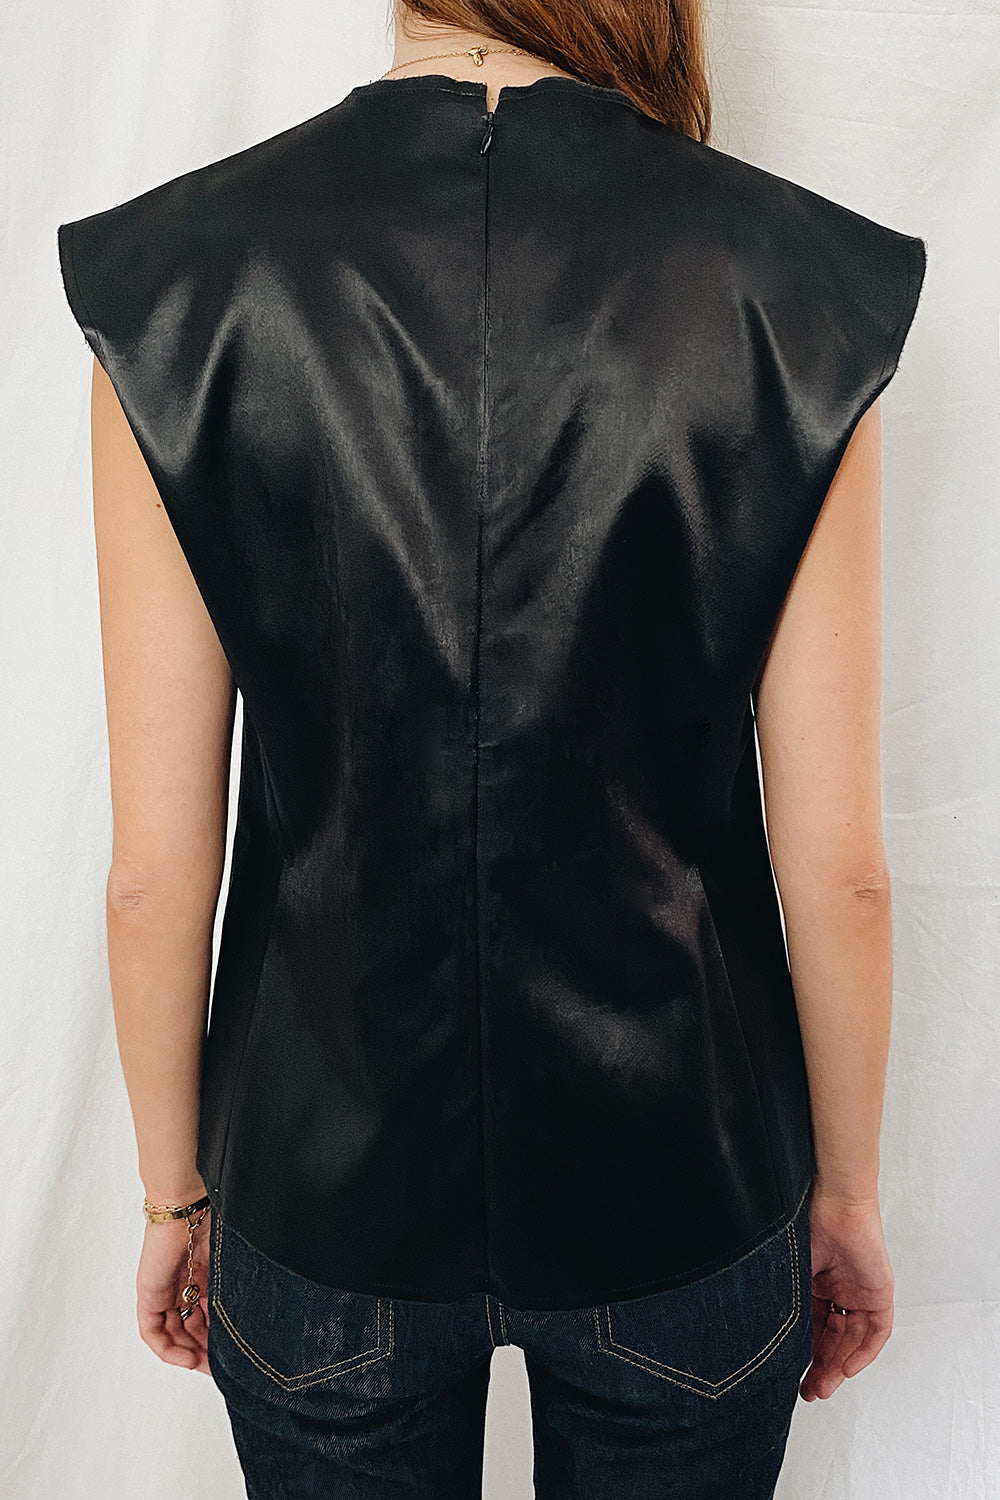 Celine Silky Sleeveless Vest Top Size 12